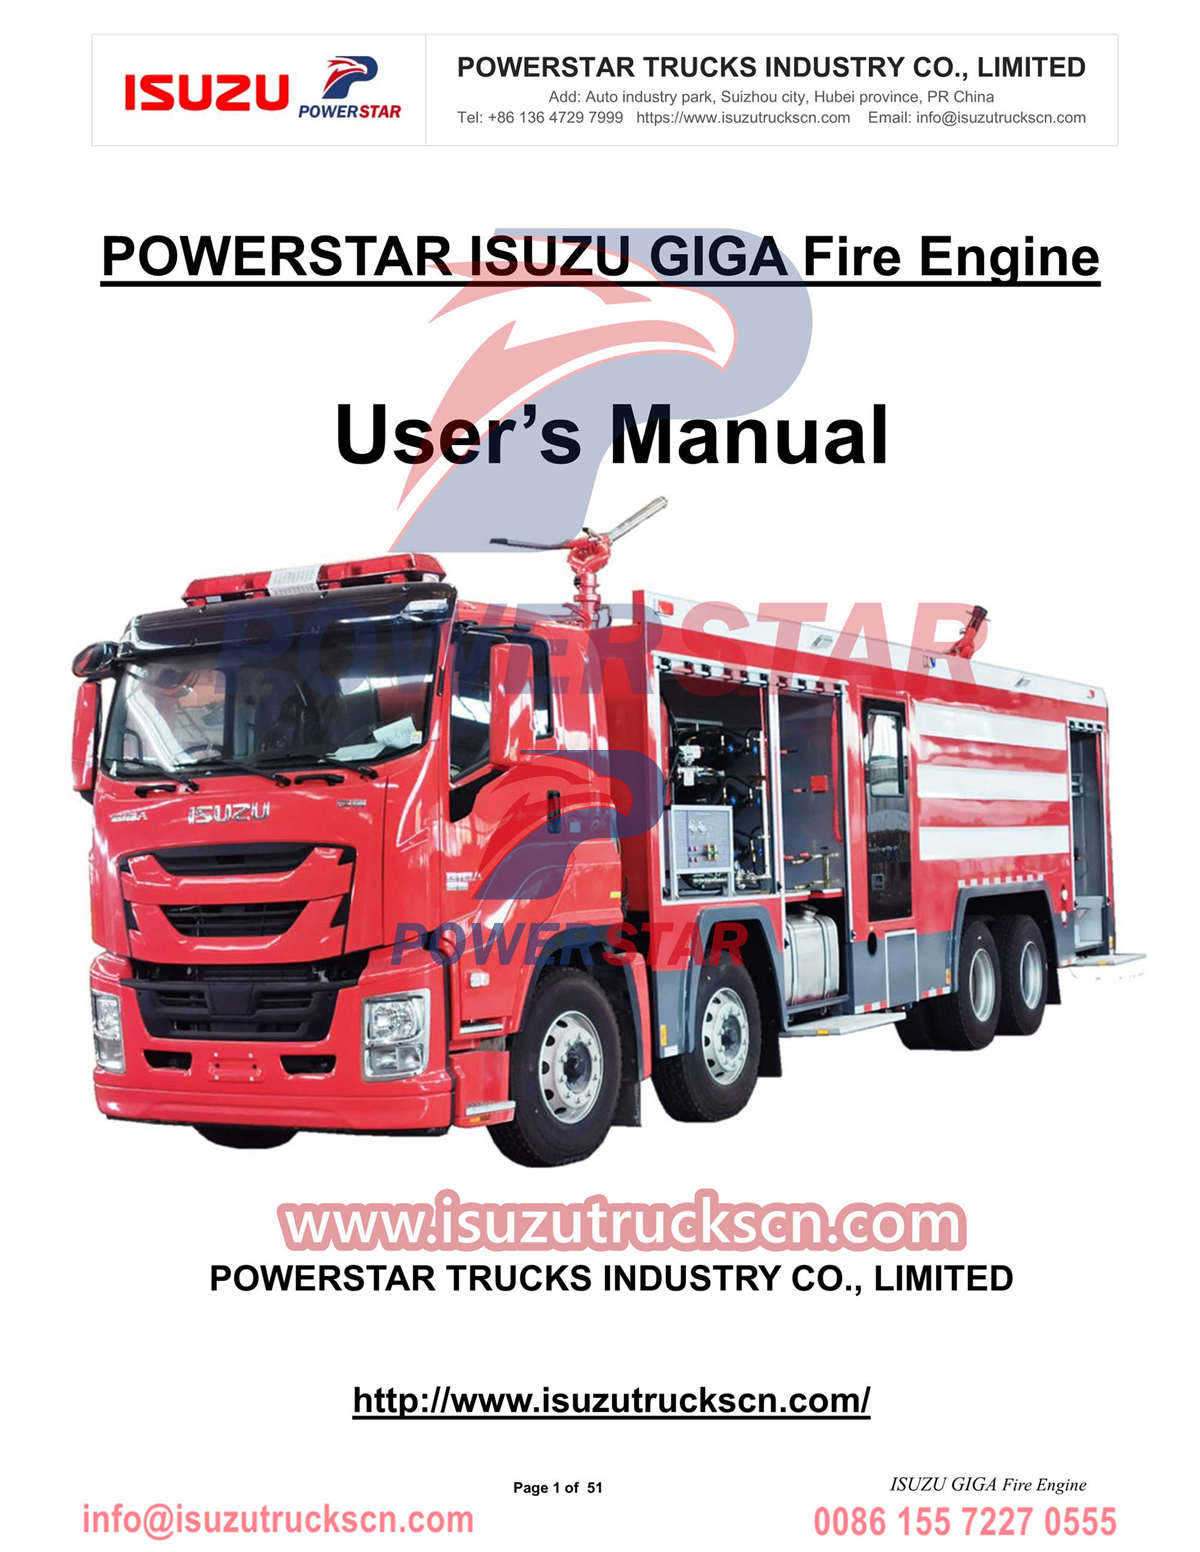 Руководство по эксплуатации пожарной машины ISUZU GIGA, экспорт в Конго, ДРК
        